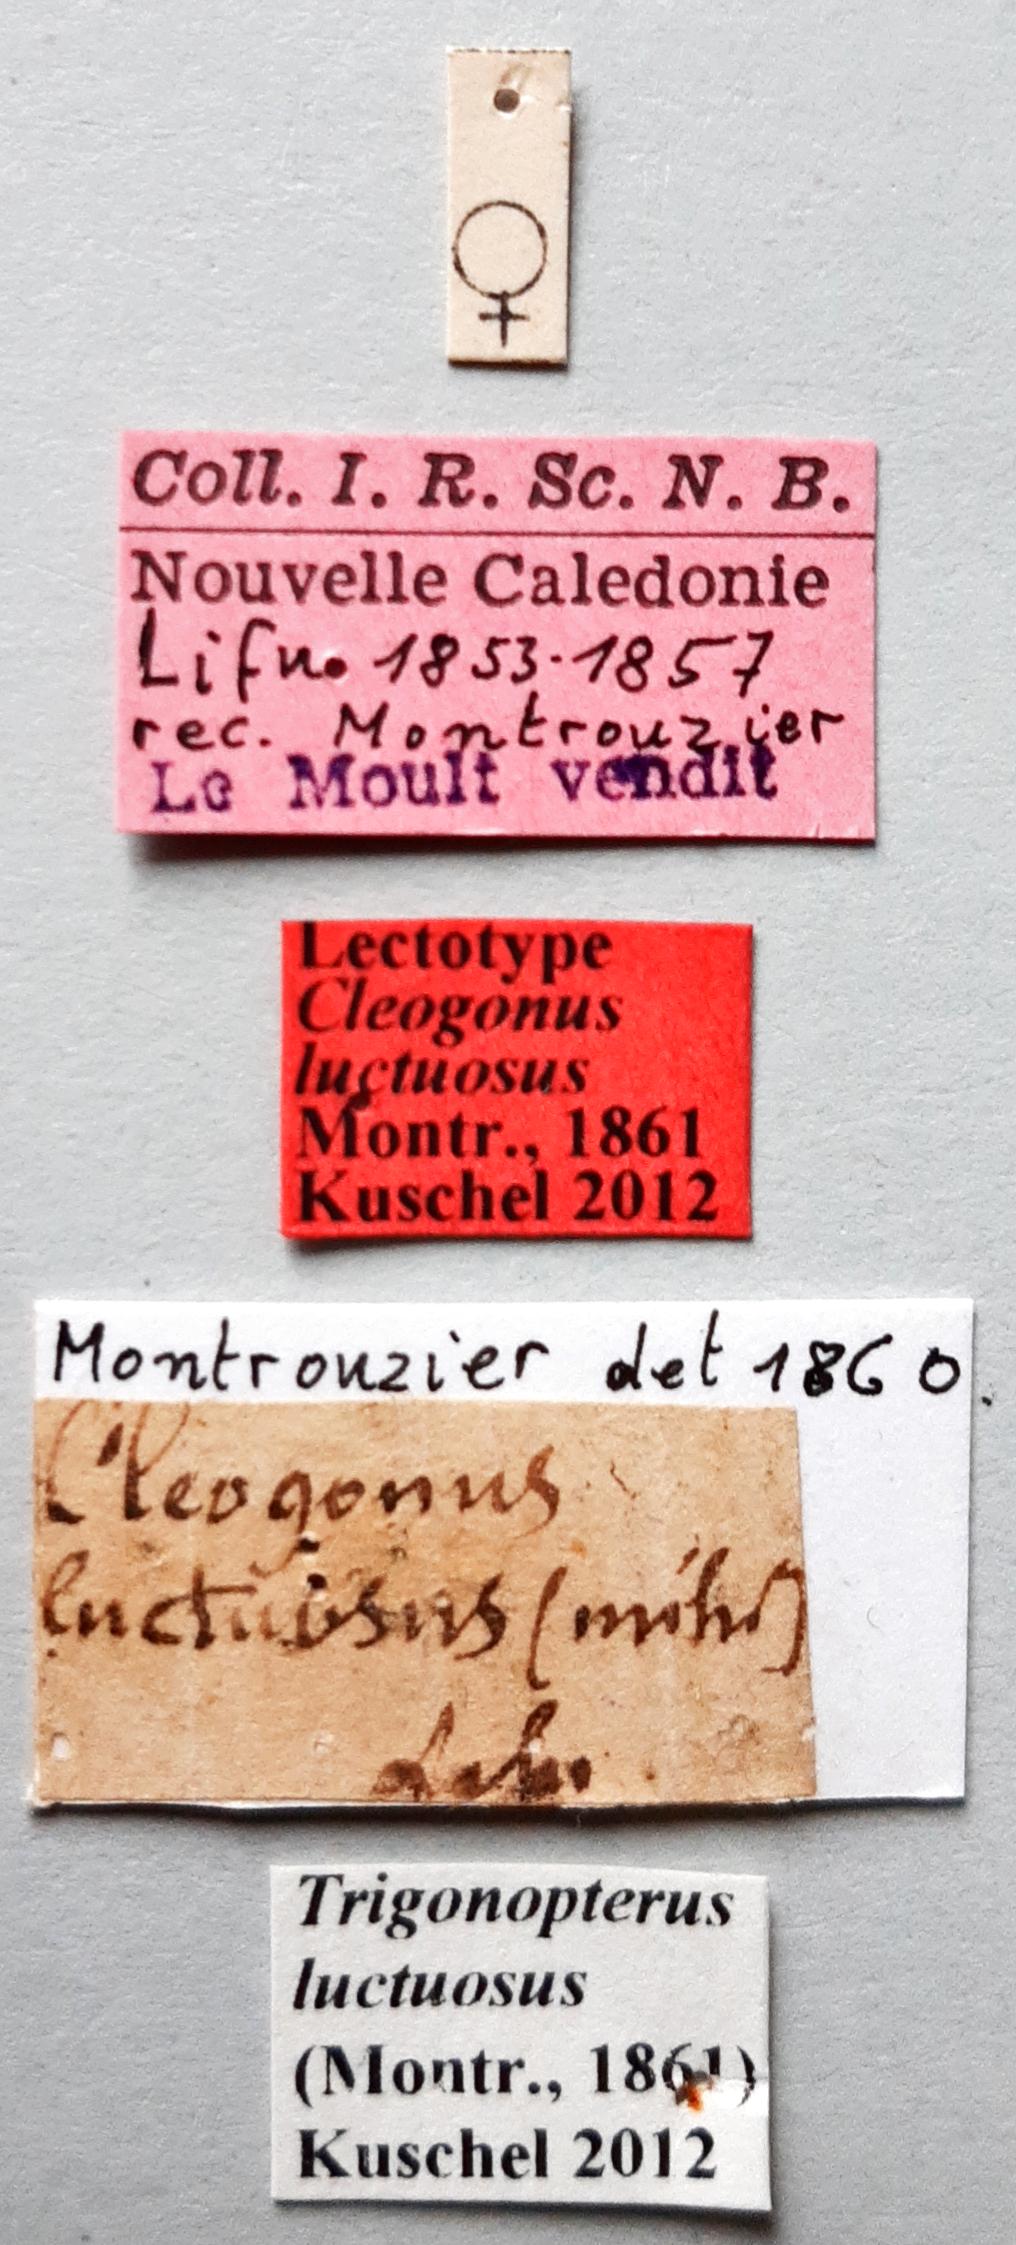 Cleogonus luctuosus Lt labels